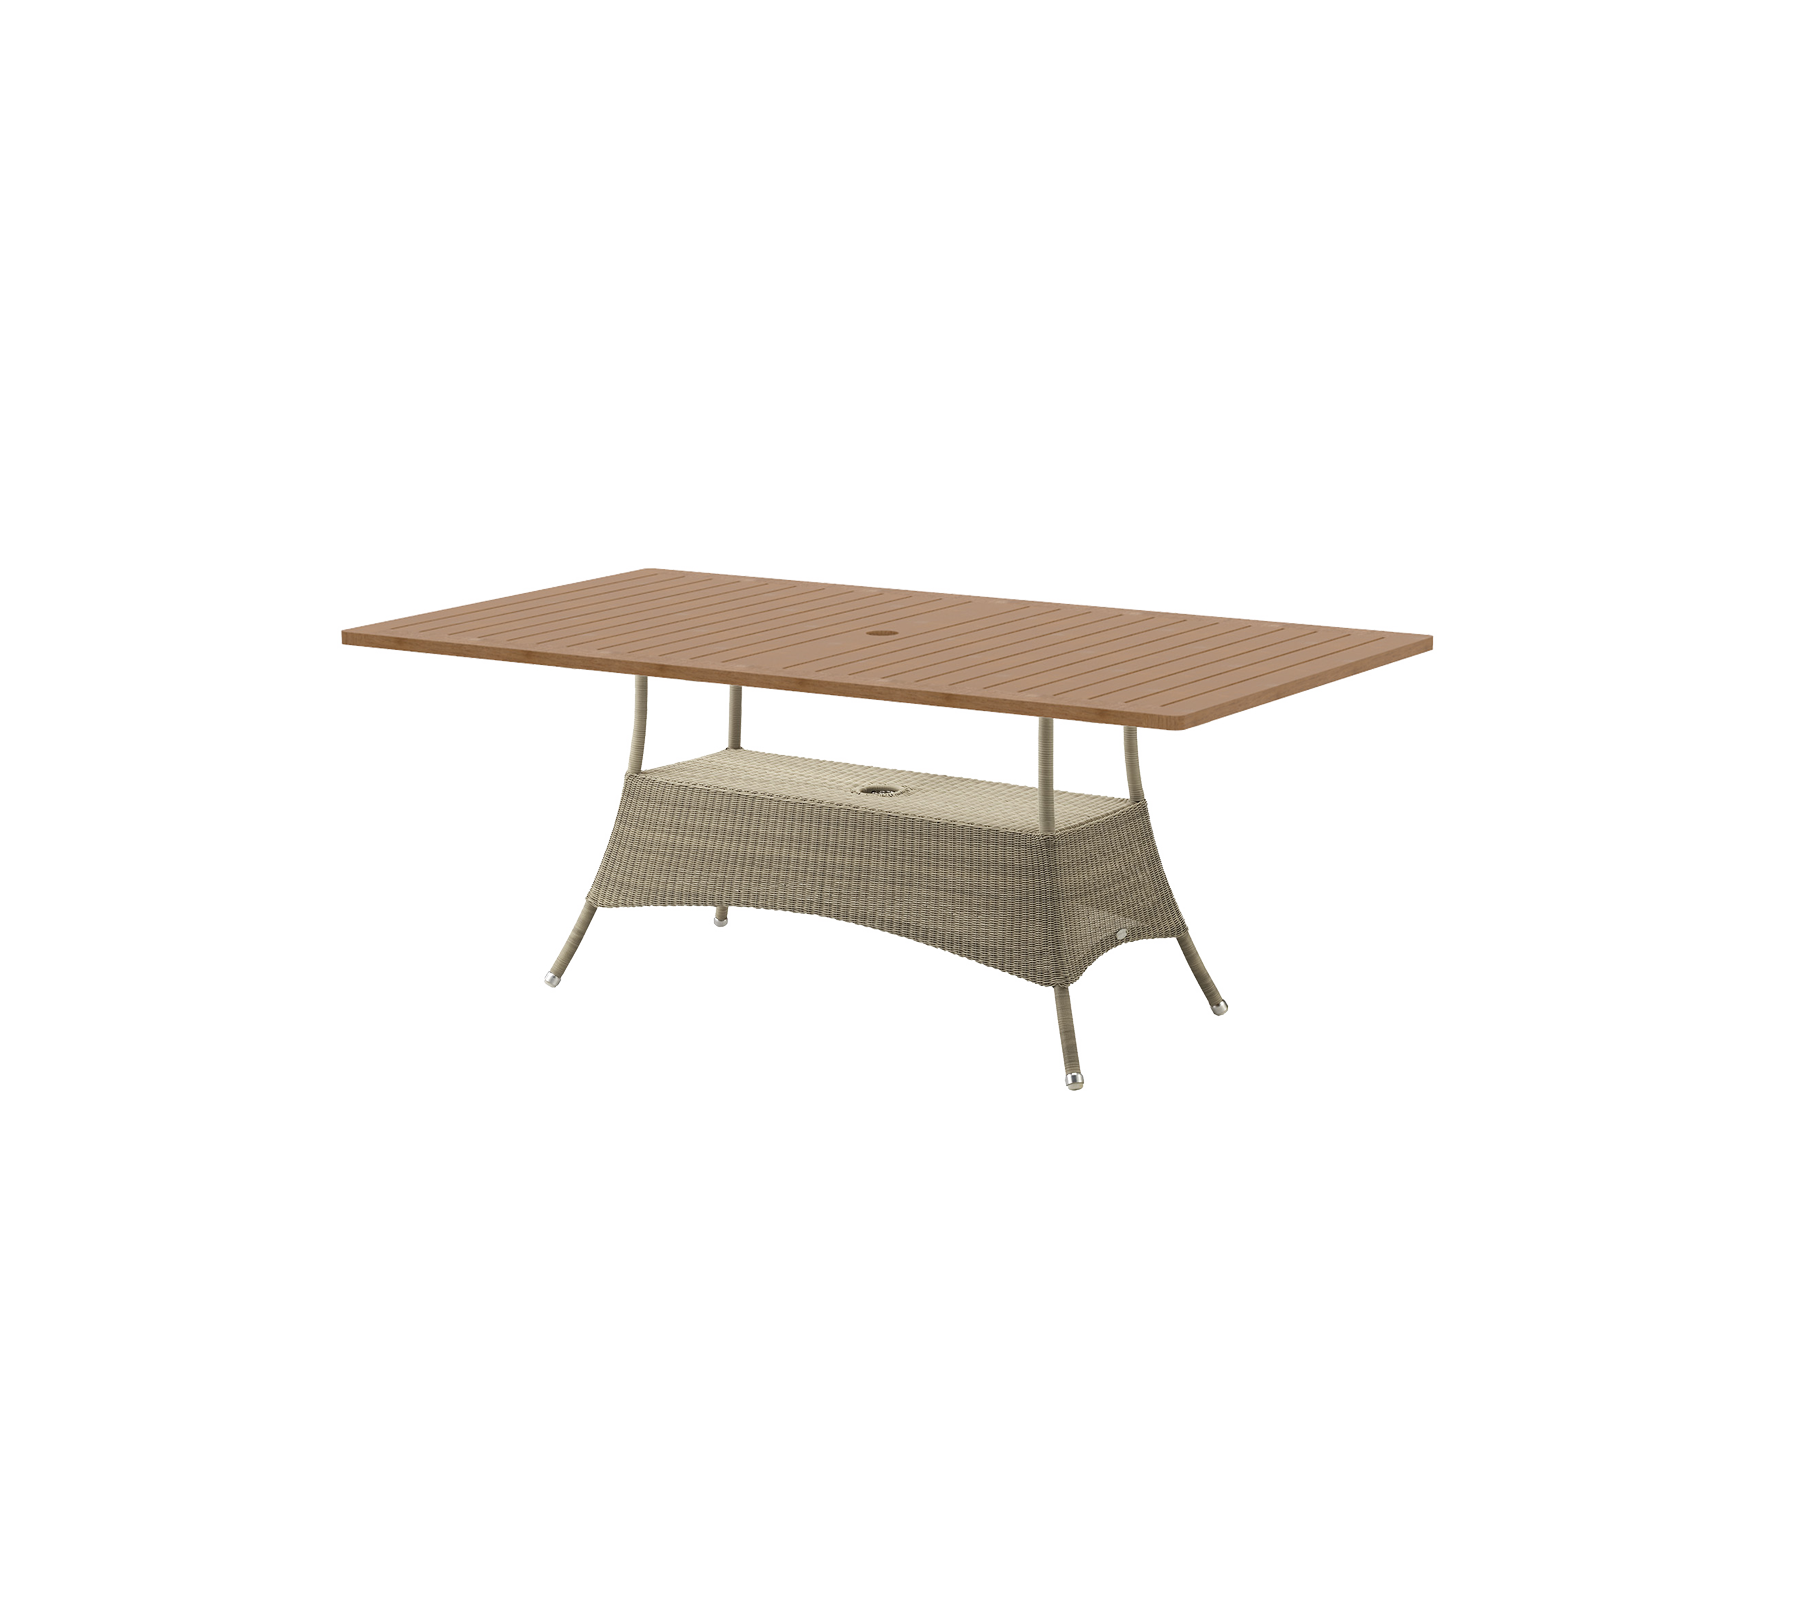 Lansing dining table, large, 180x100 cm